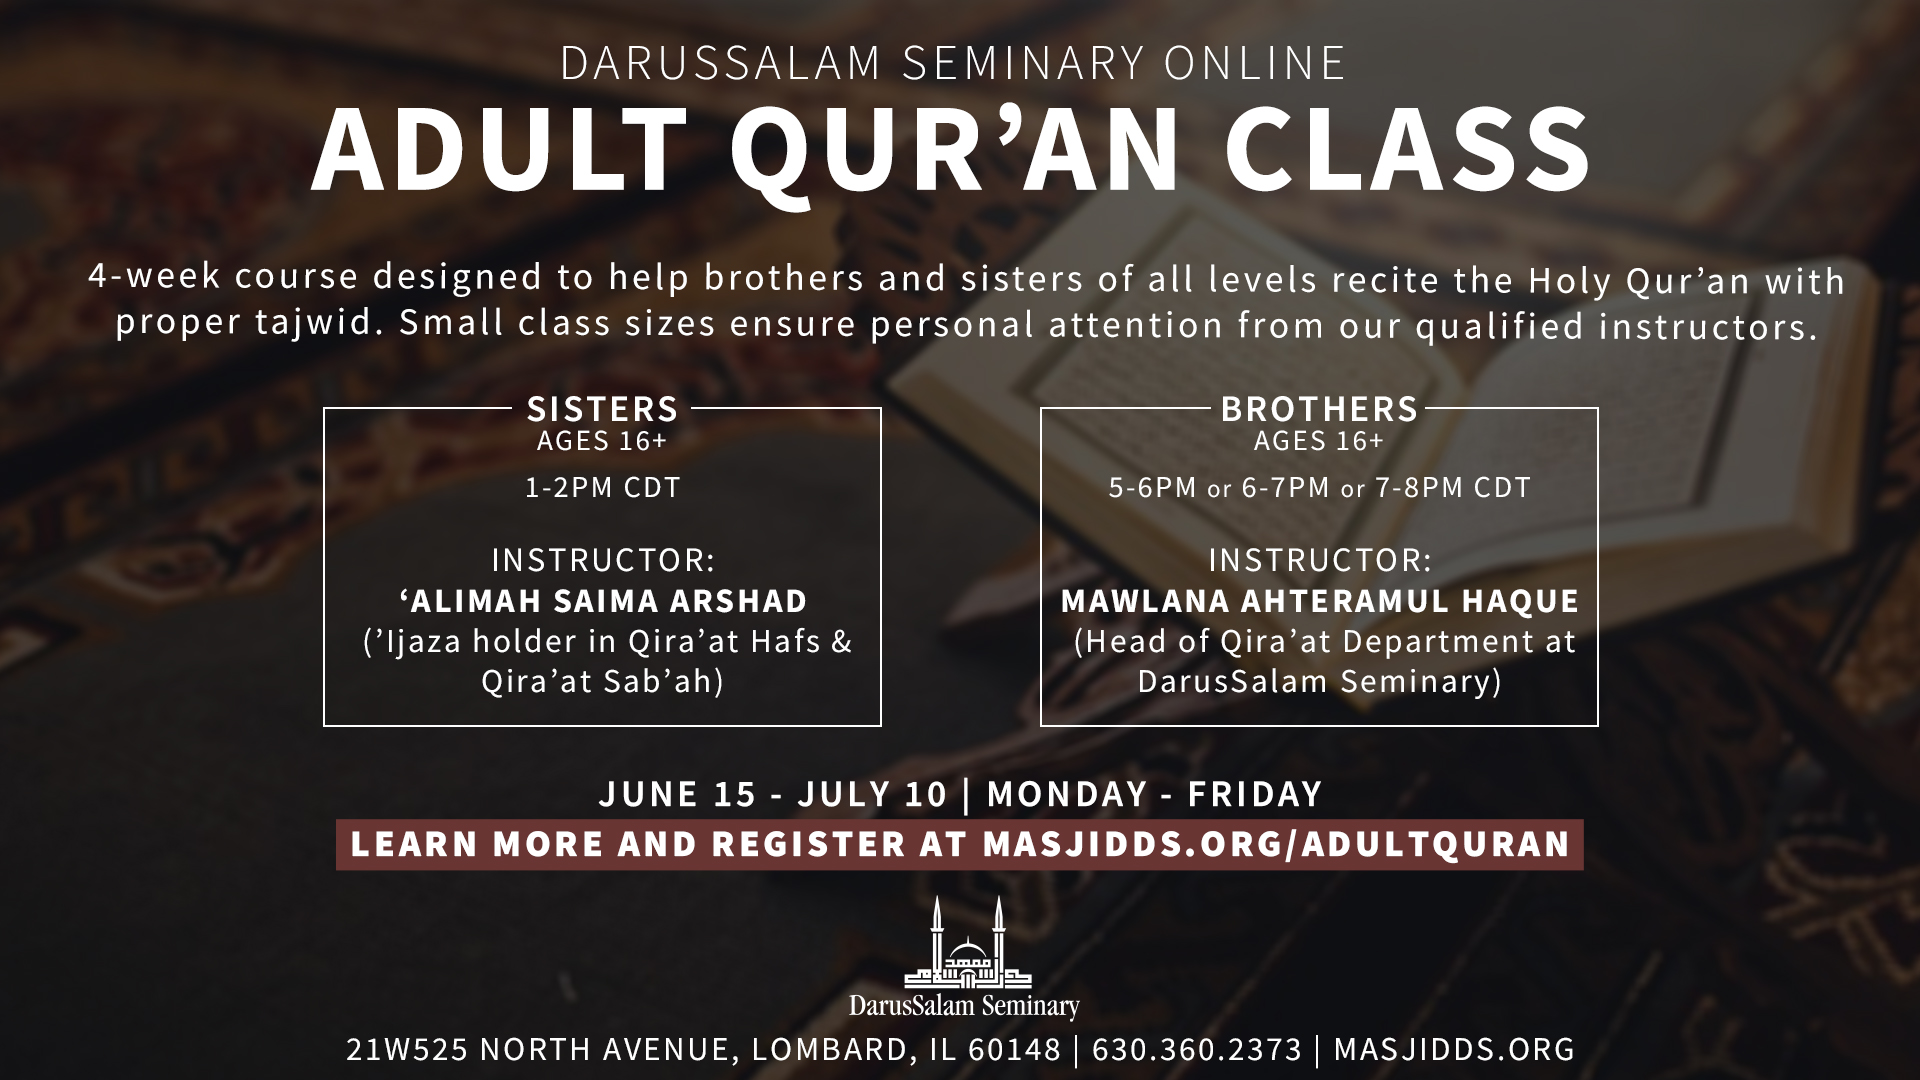 Adult Arabic Class – Masjid DarusSalam